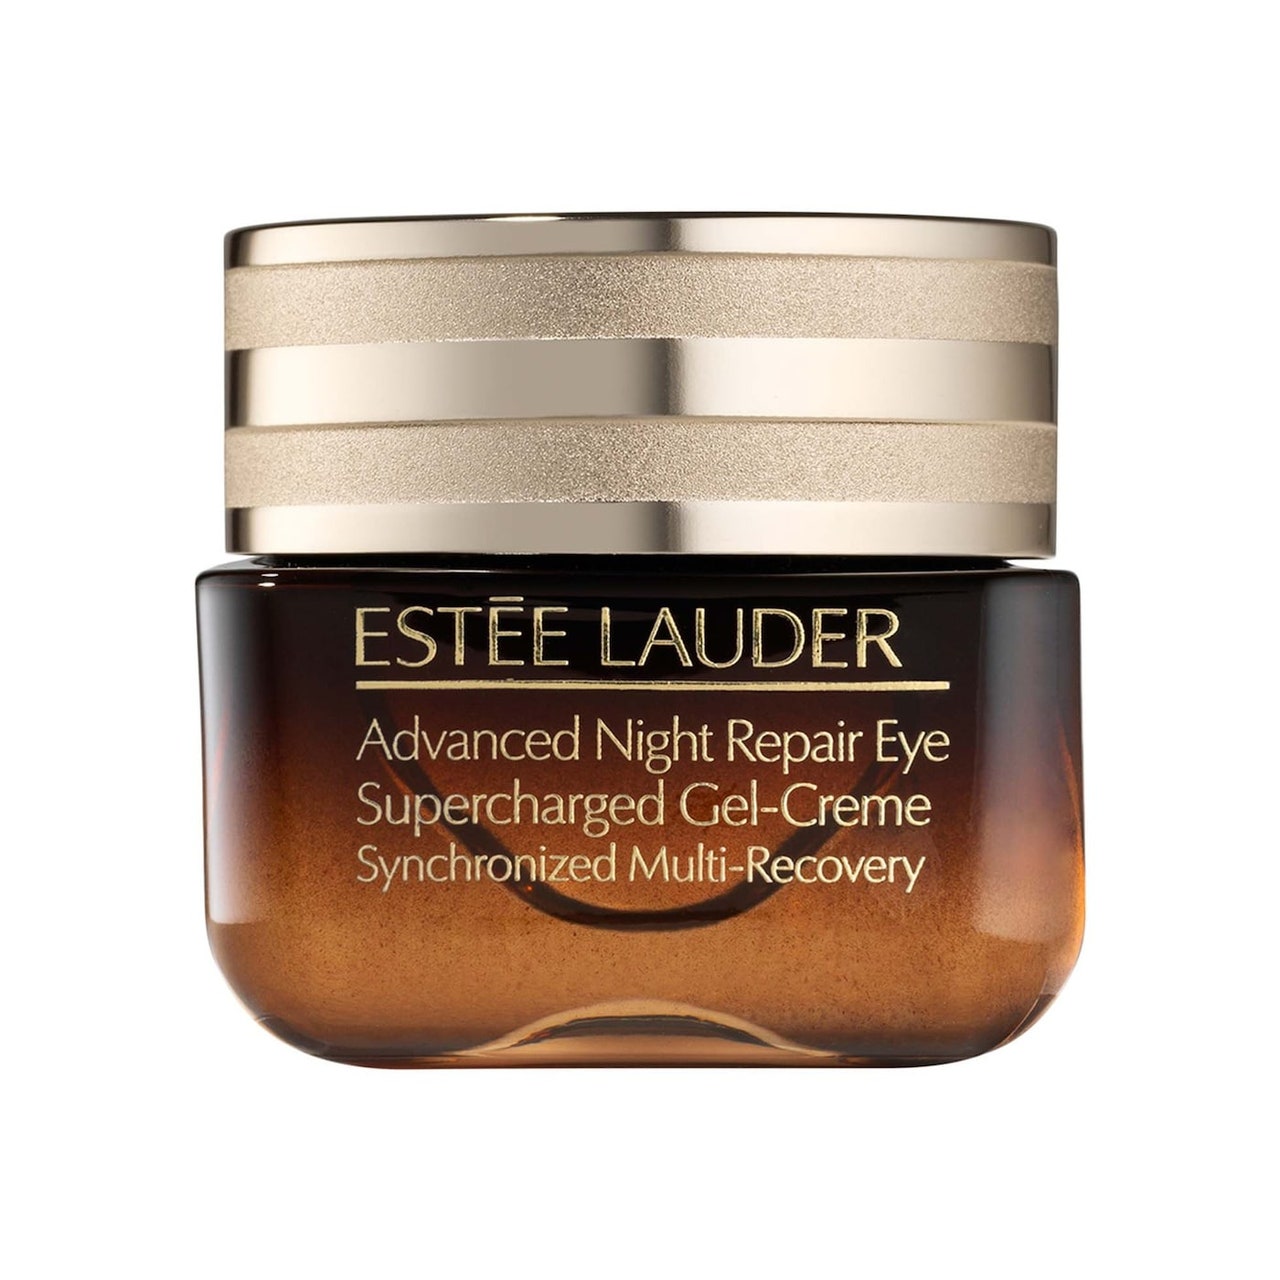 Estée Lauder Advanced Night Repair Eye Supercharged Gel-Creme braunes Glas mit goldenem Deckel auf weißem Hintergrund